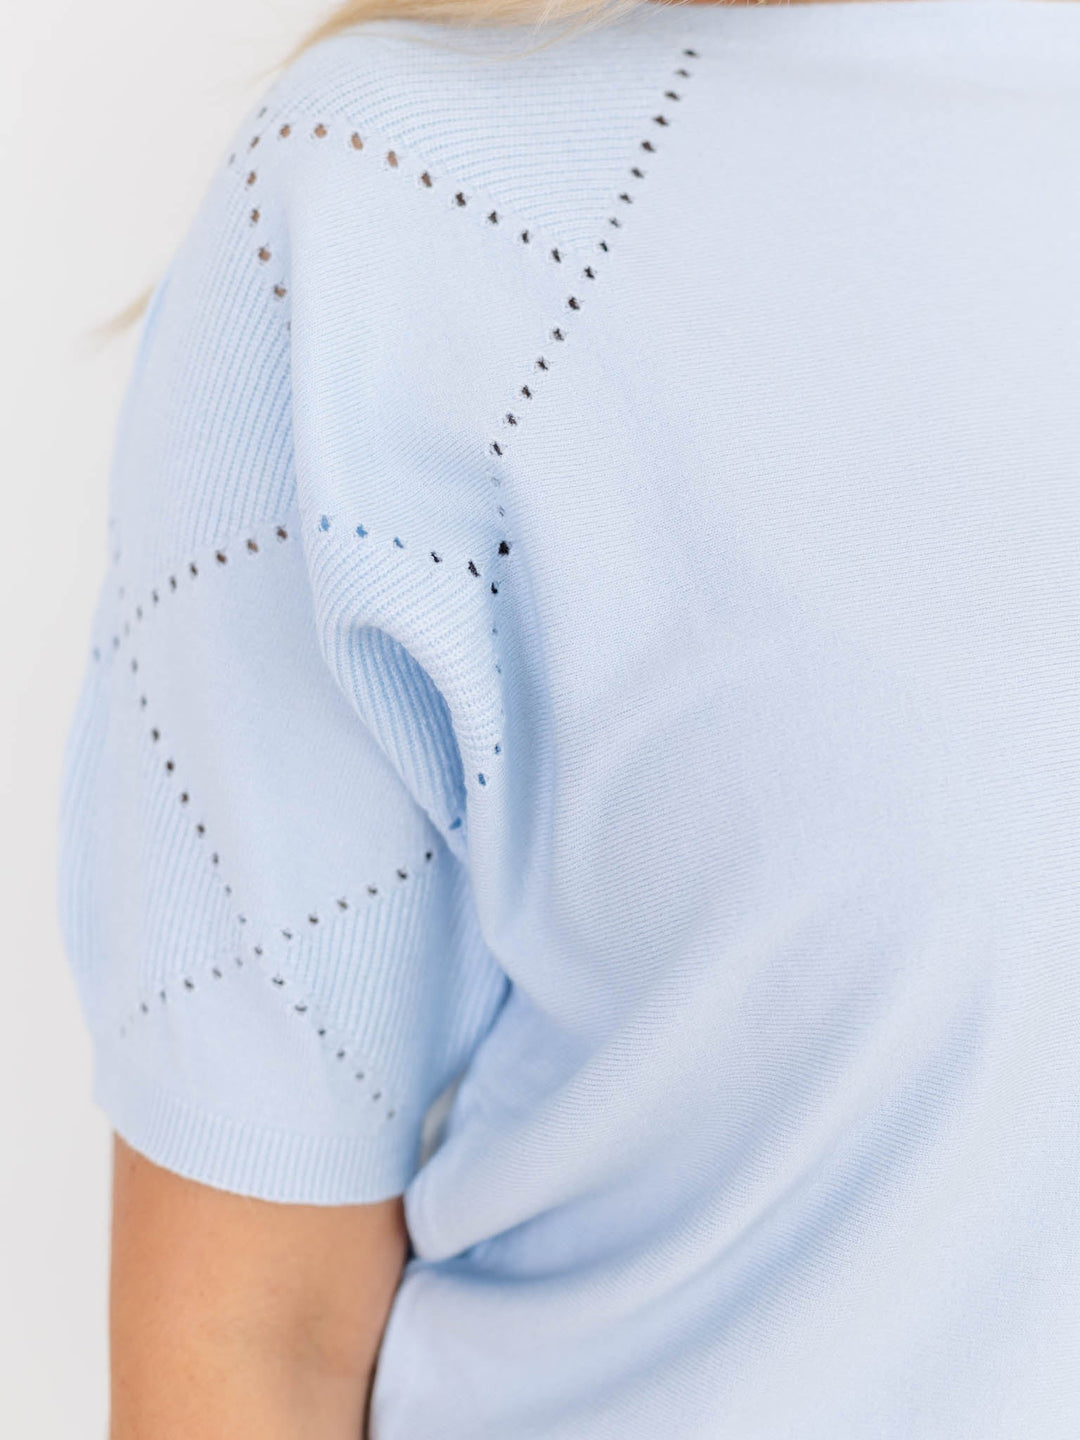 Allie Rose Short Sleeve Fine Gauge TopKnit tops